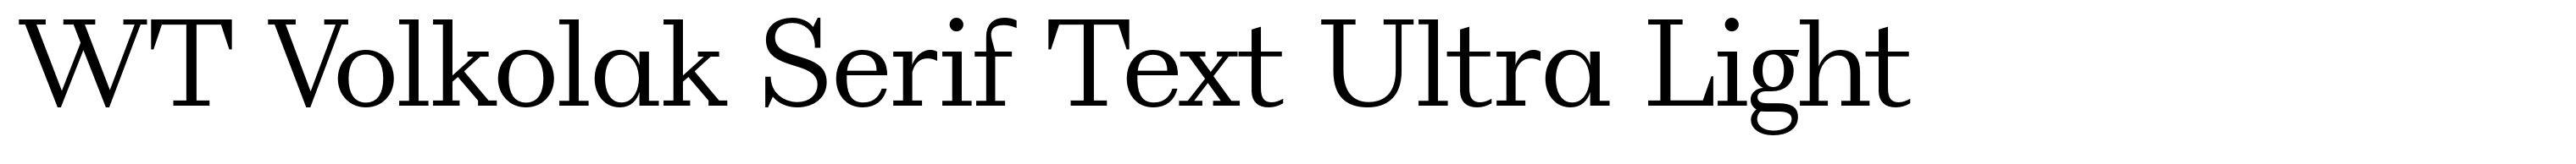 WT Volkolak Serif Text Ultra Light